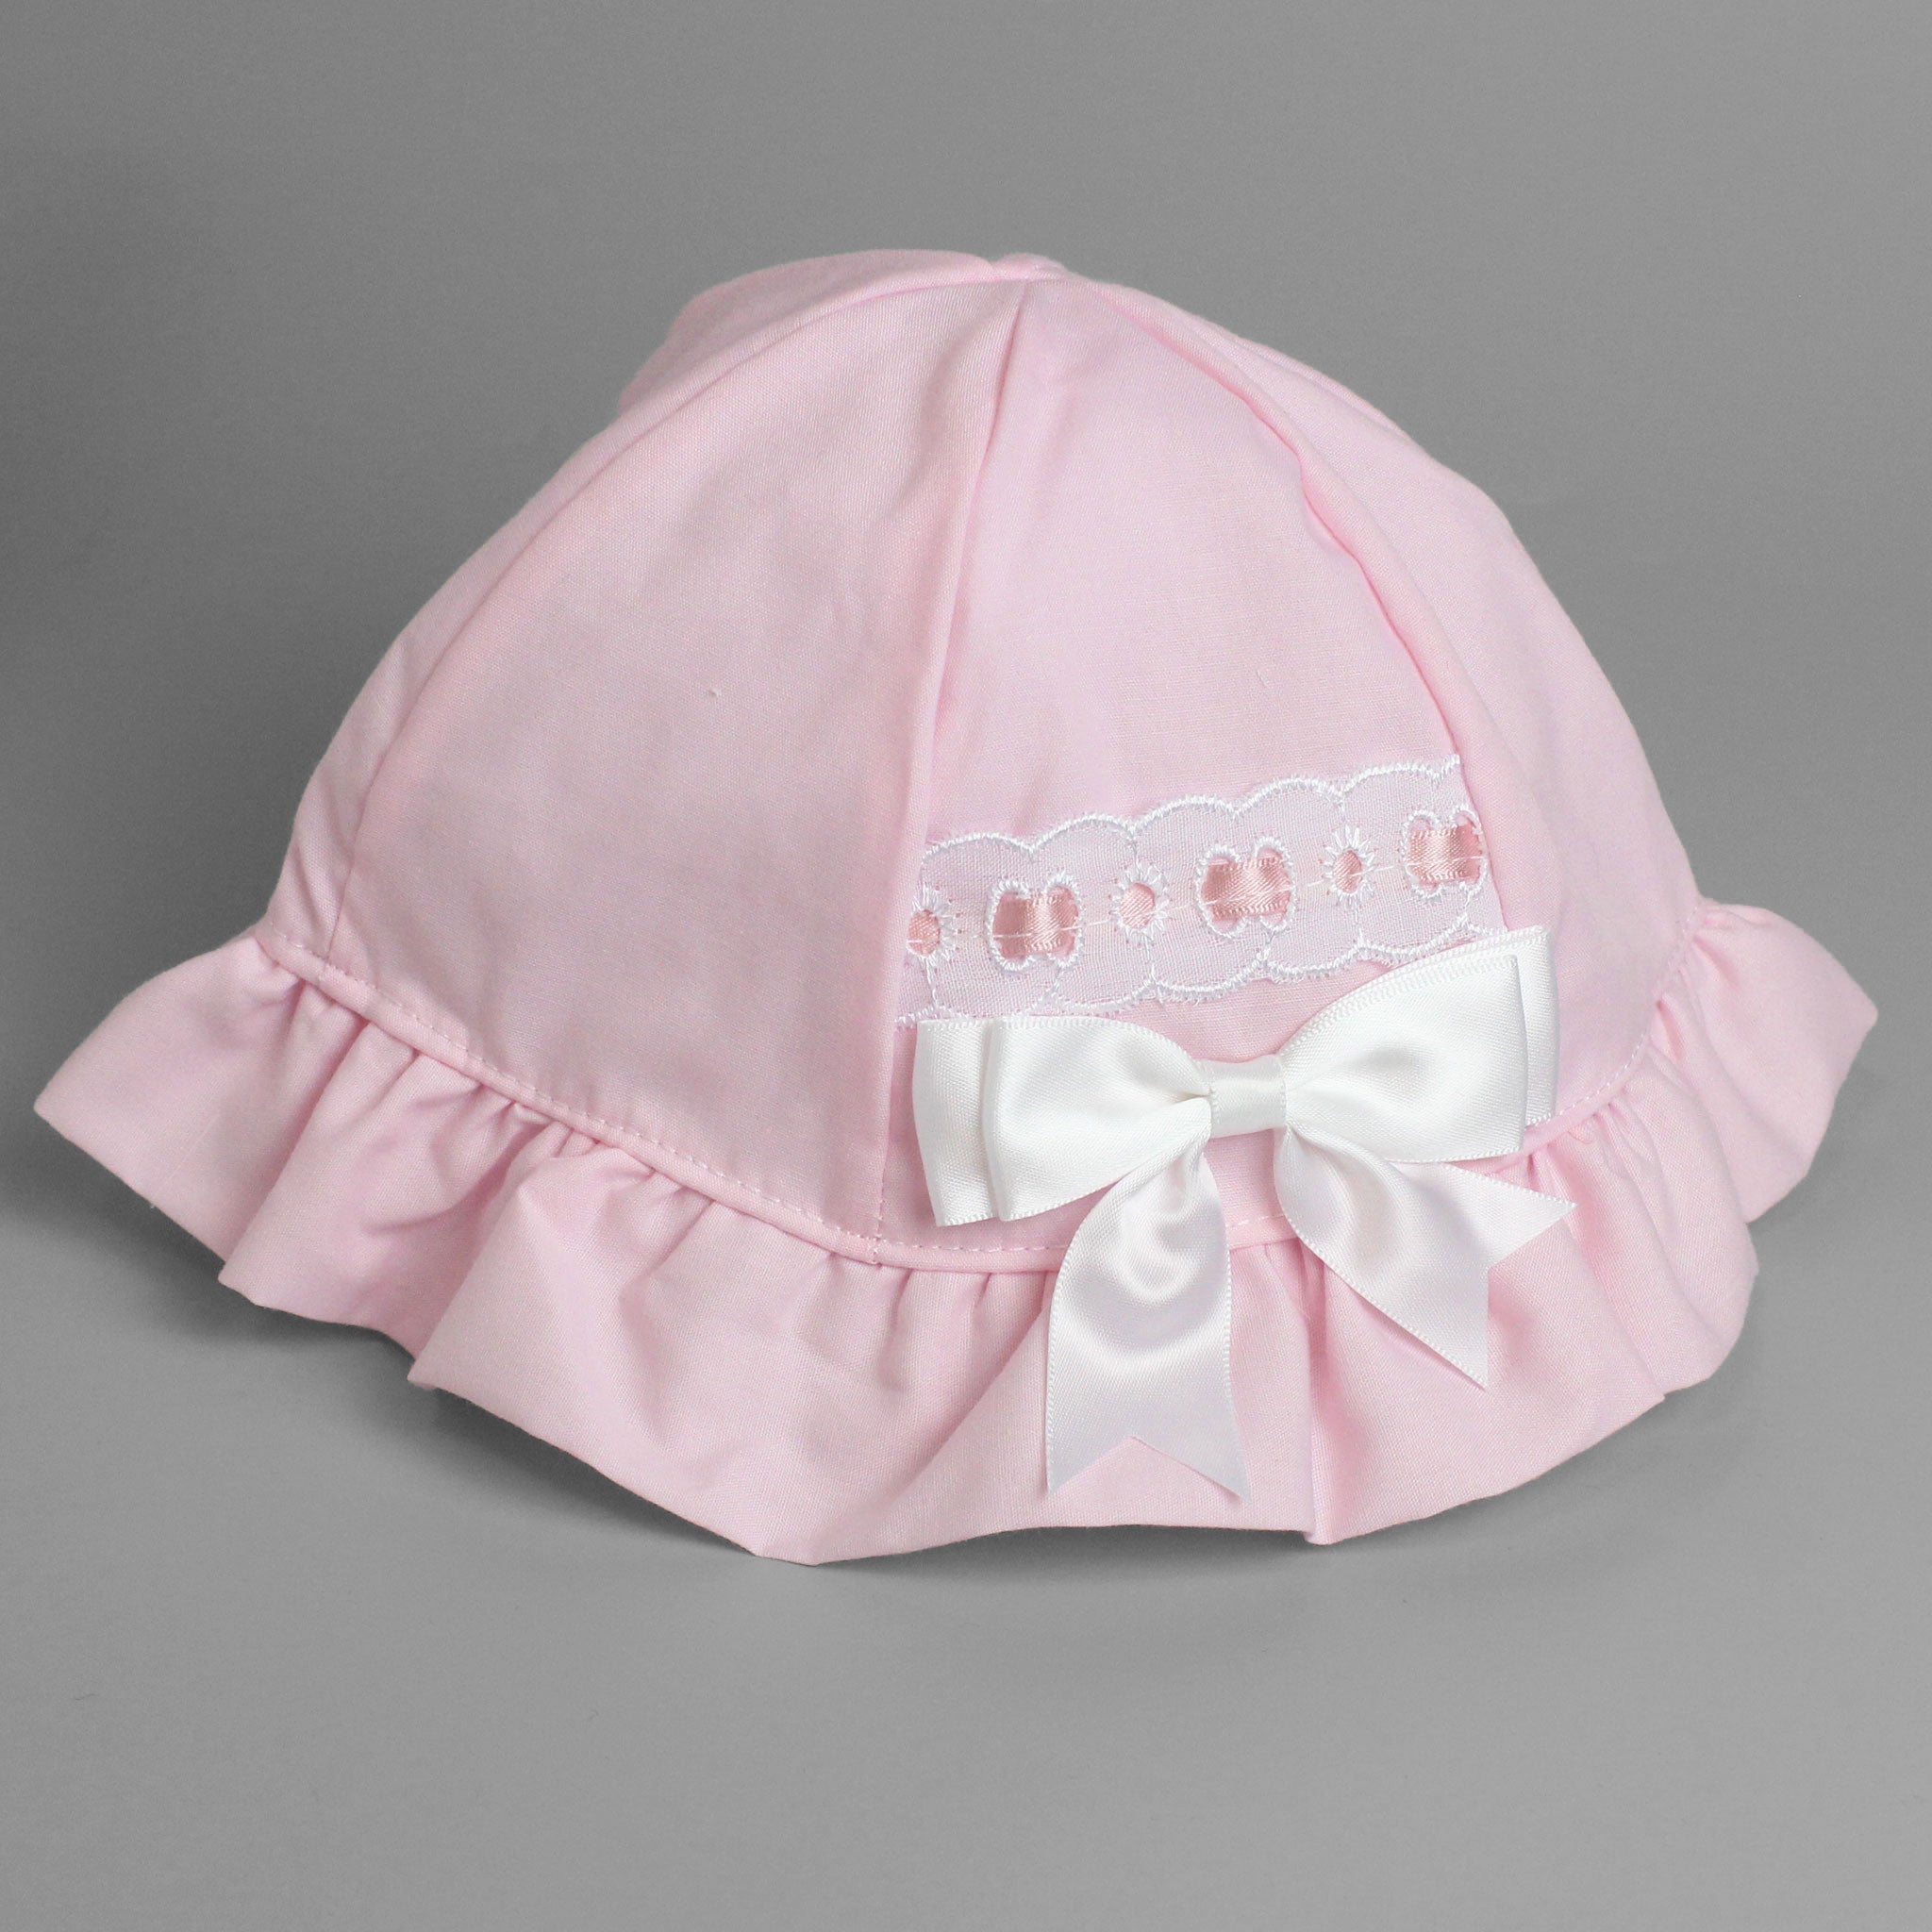 baby girl pink sun hat summer sun hat